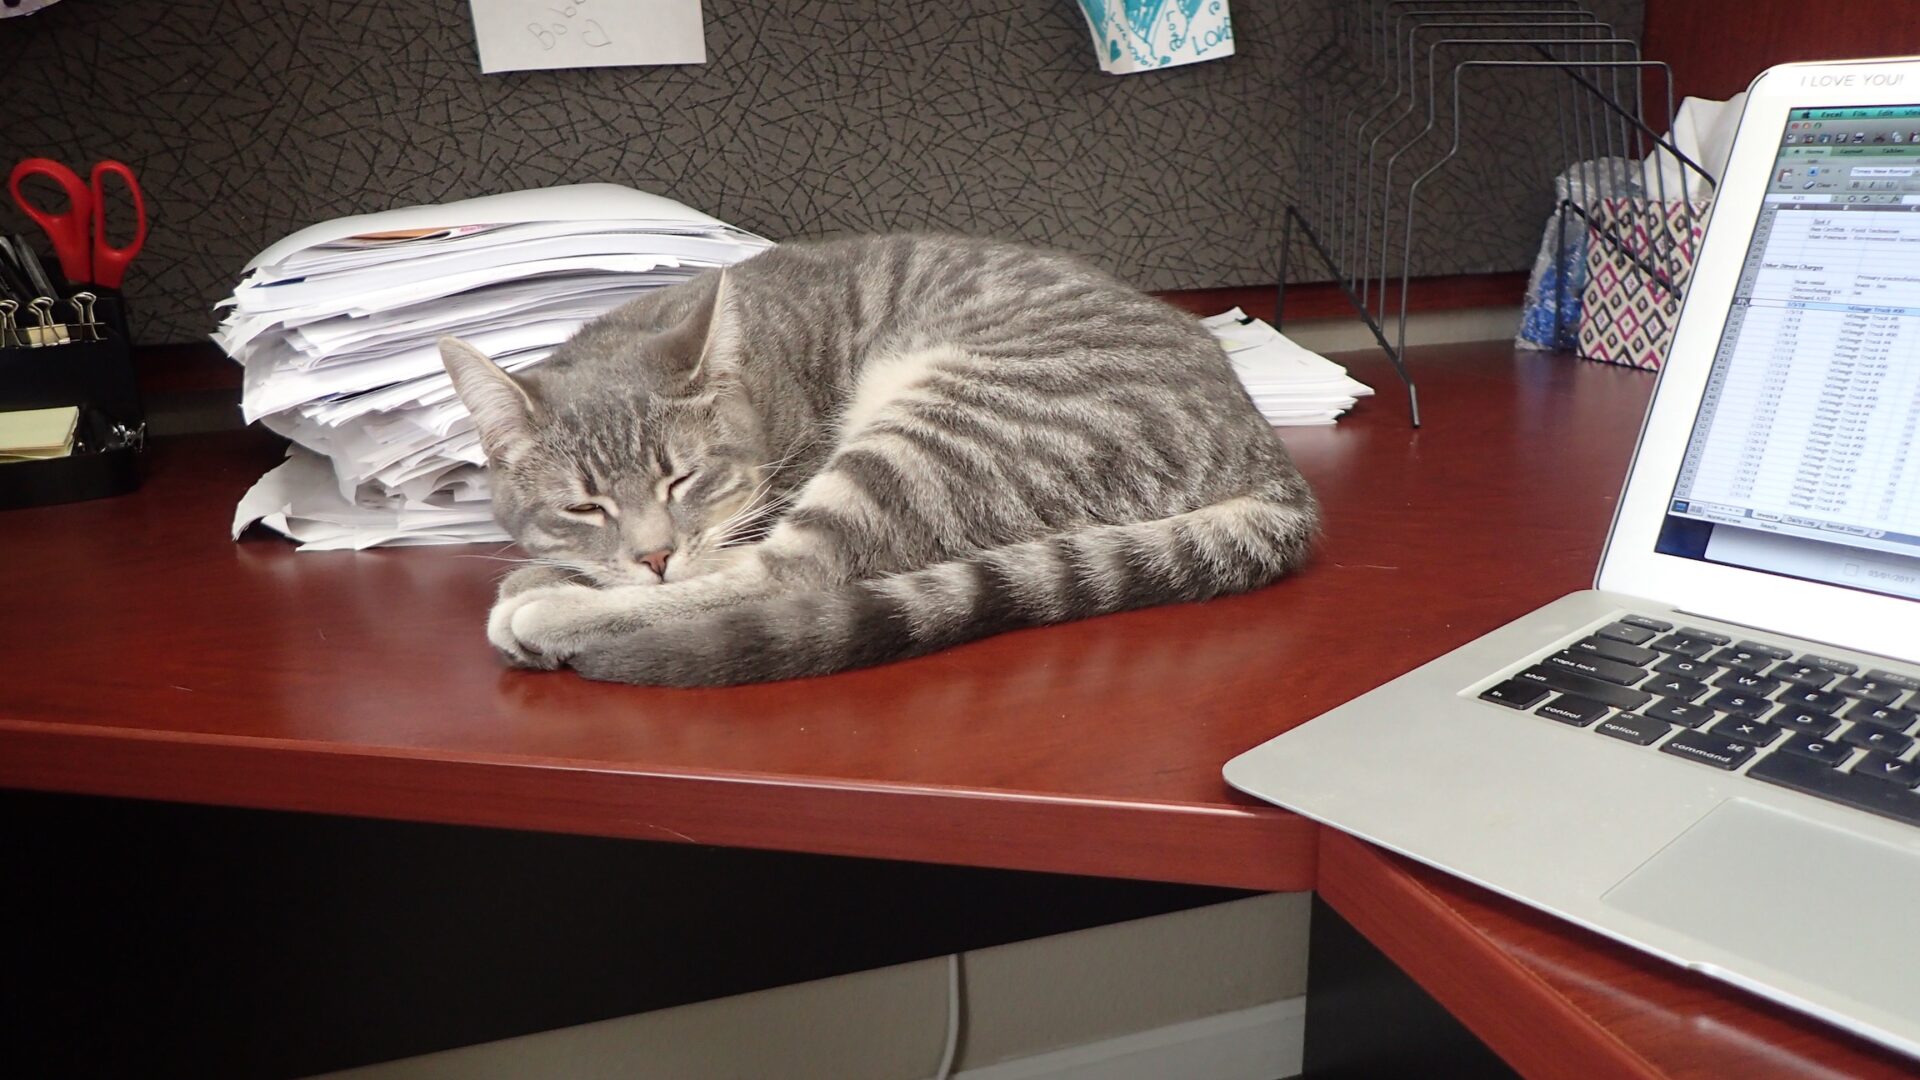 Mister kitten napping on desk